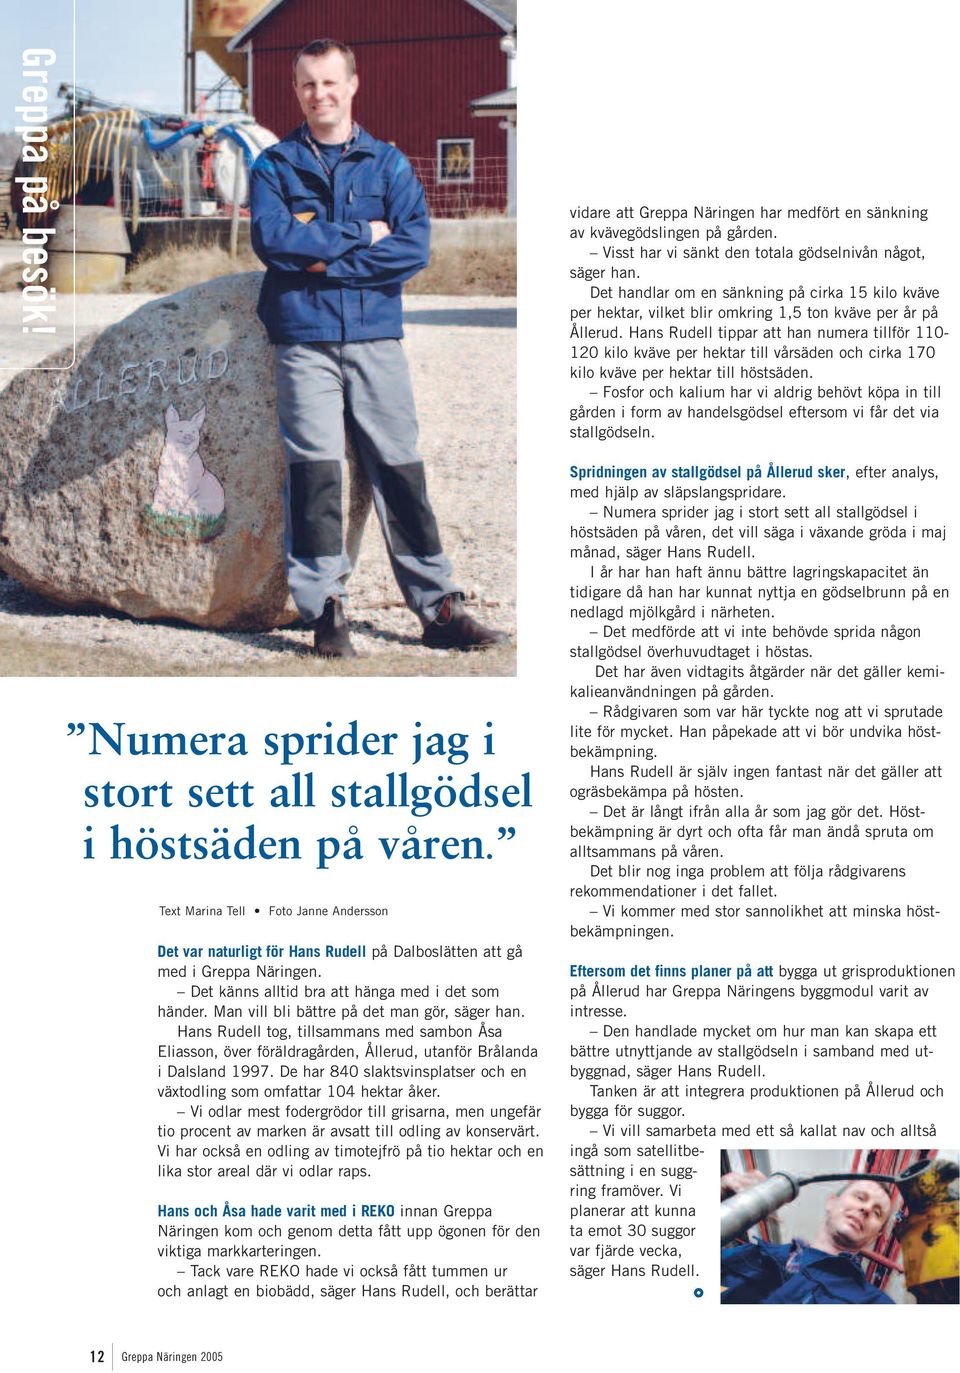 Man vill bli bättre på det man gör, säger han. Hans Rudell tog, tillsammans med sambon Åsa Eliasson, över föräldragården, Ållerud, utanför Brålanda i Dalsland 1997.